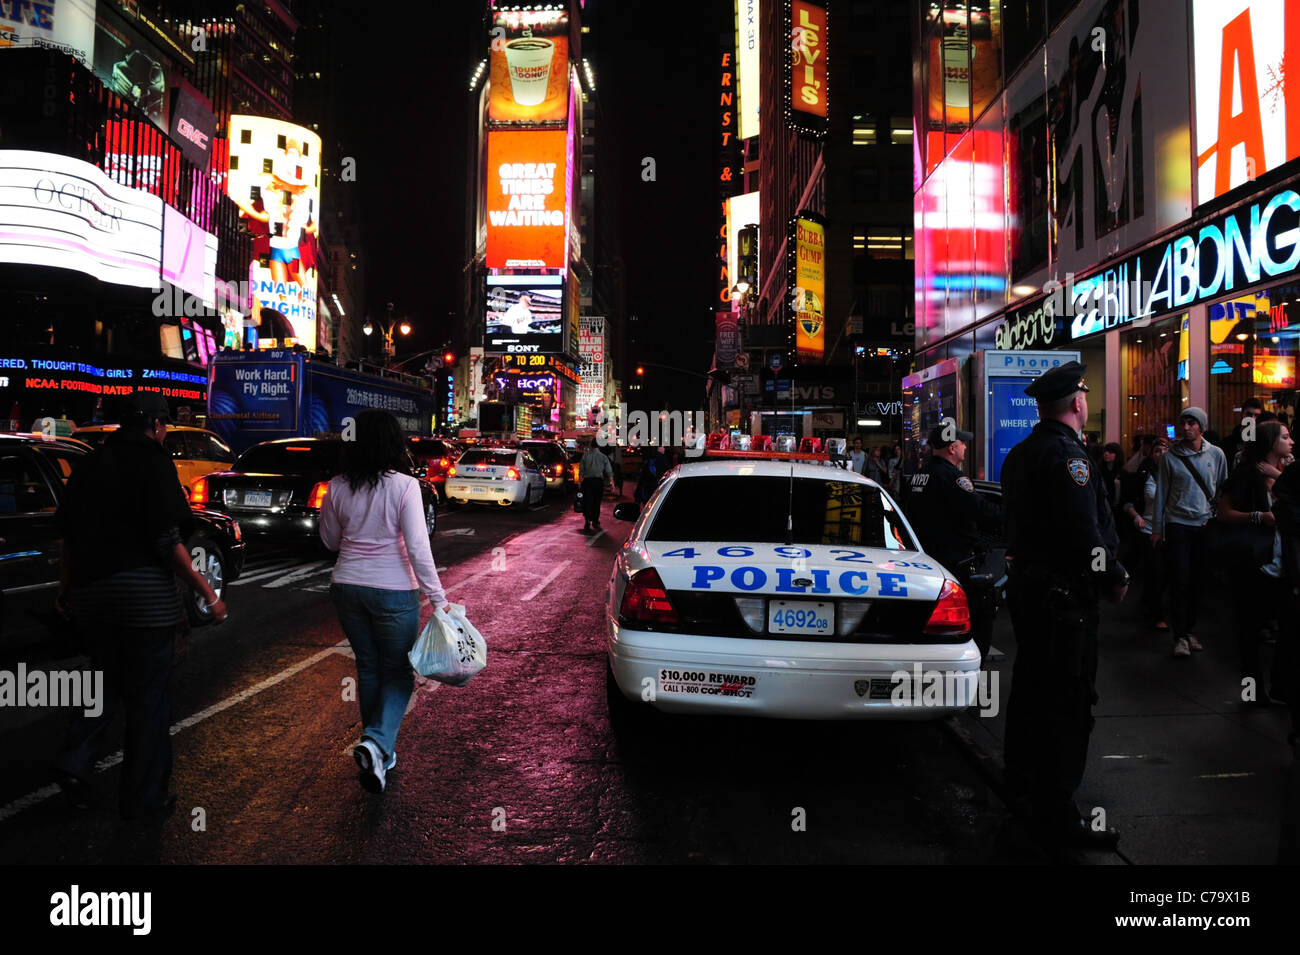 Vista notte marciapiede poliziotti, parcheggiato auto della polizia, gente che passeggia, traffico, neon, 7th Avenue, Times Square a New York City, Stati Uniti d'America Foto Stock